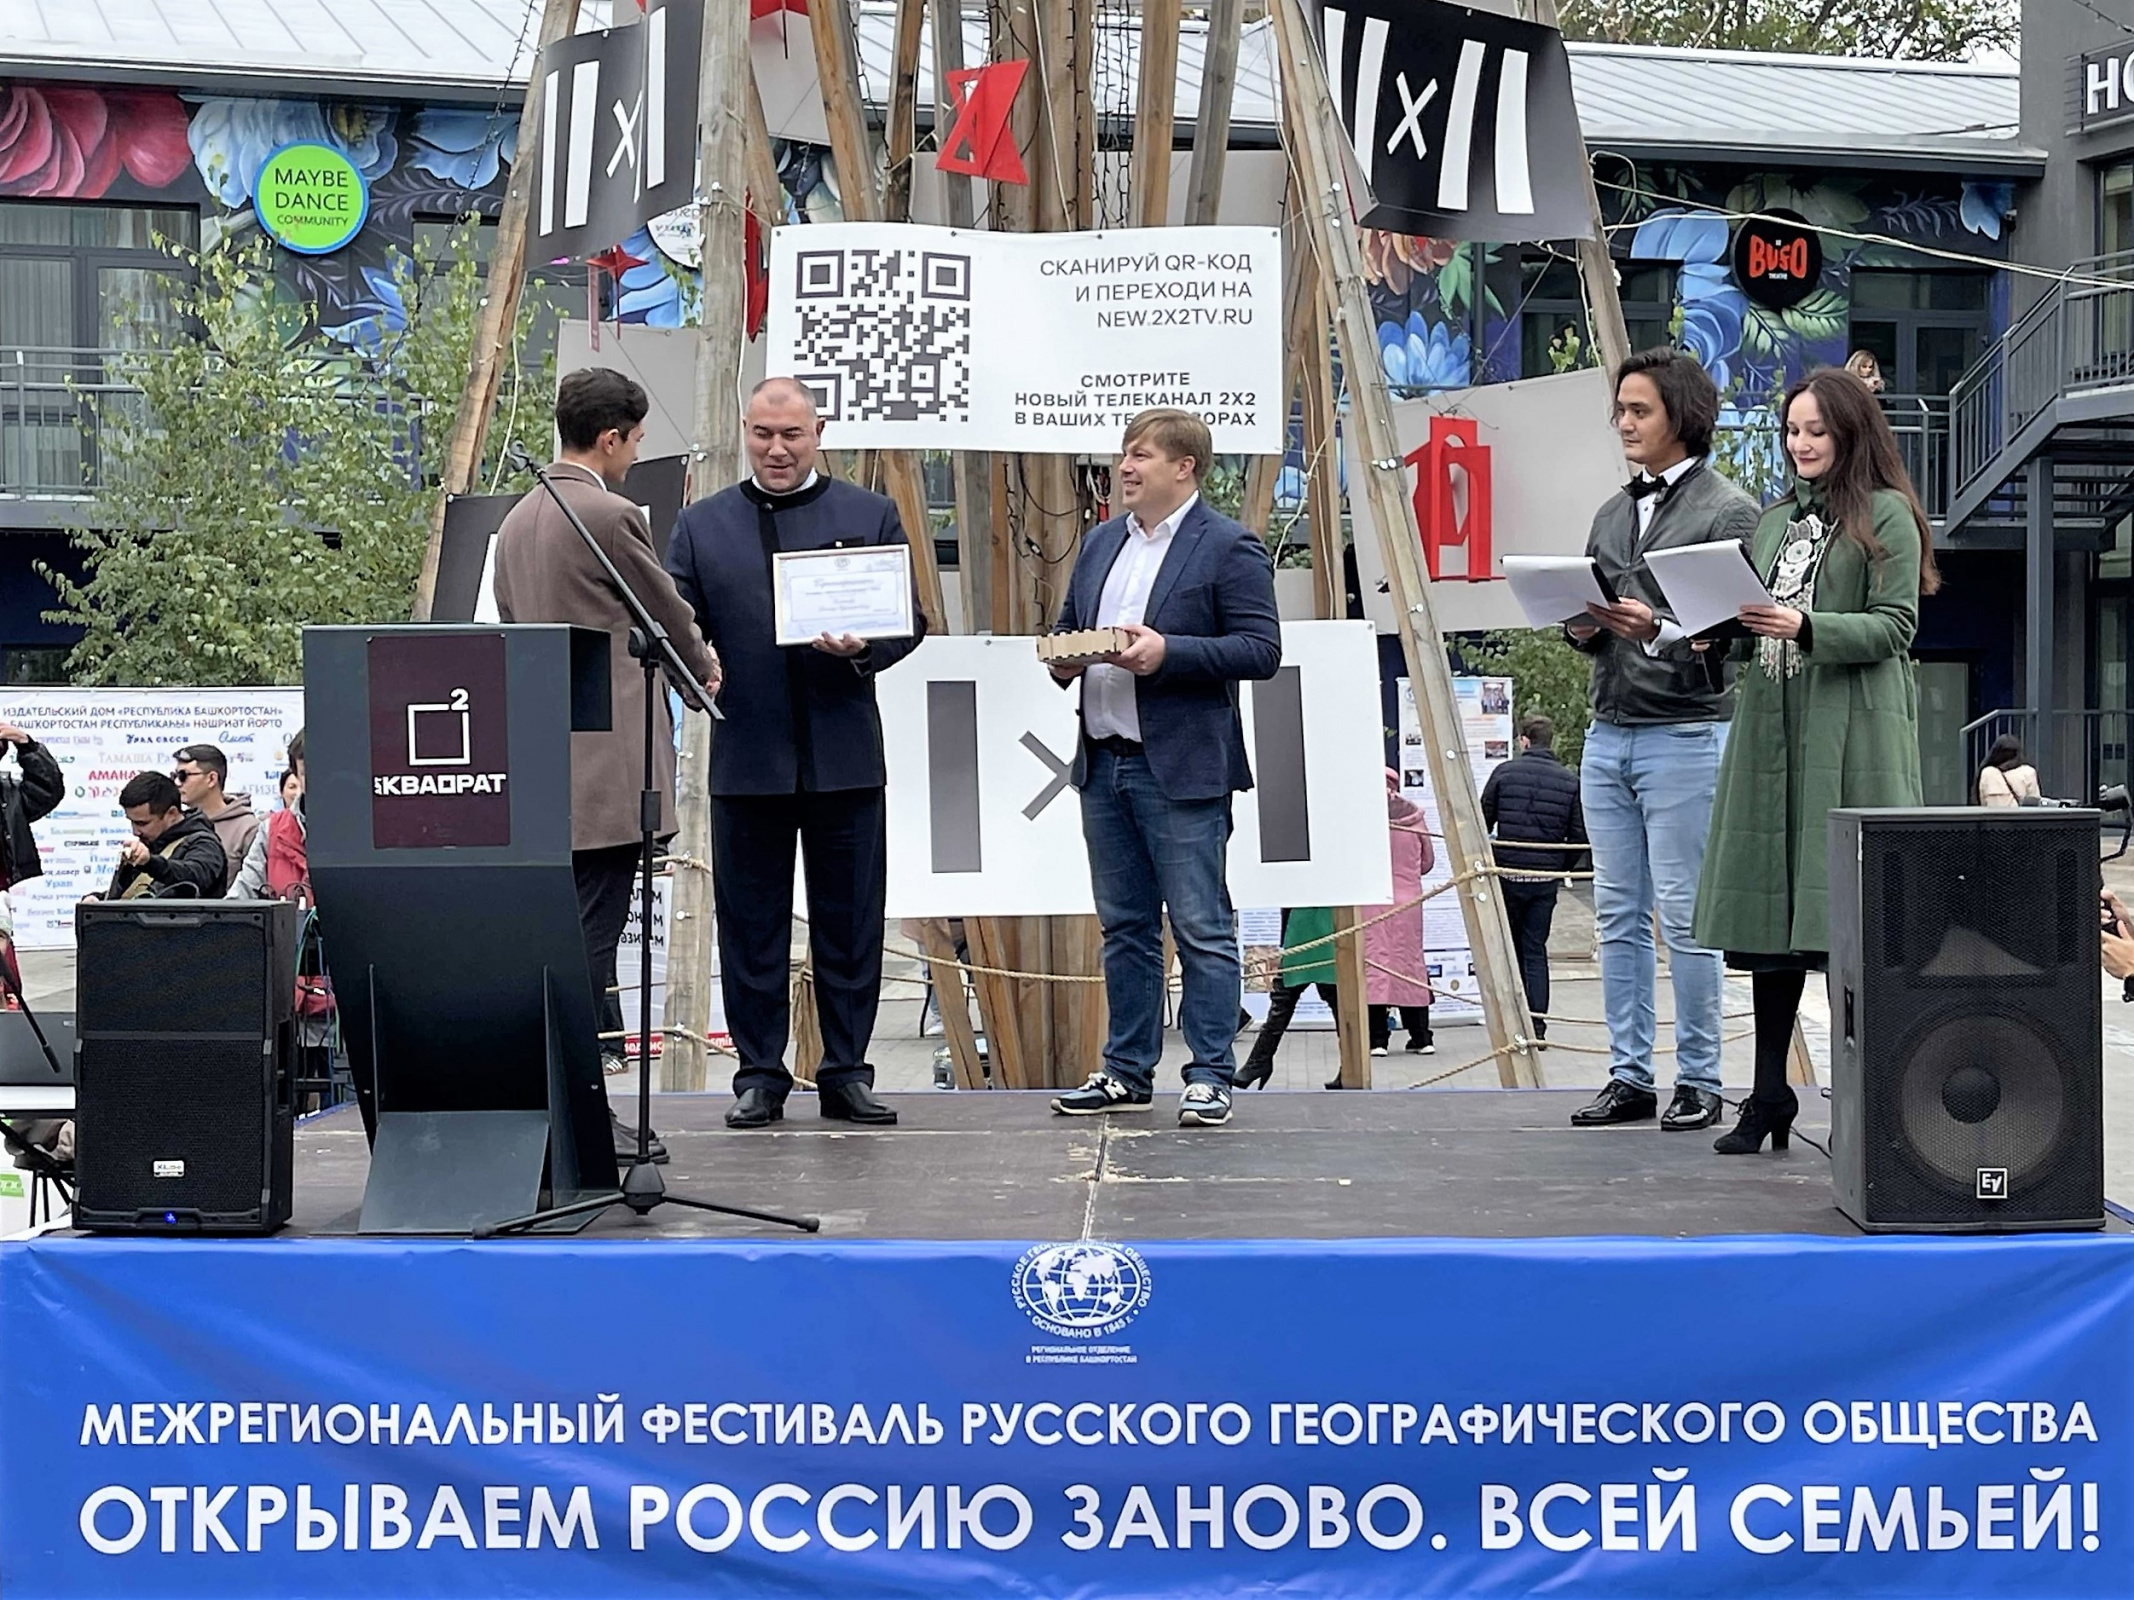 Фото предоставлено пресс-службой отделения РГО в Башкортостане